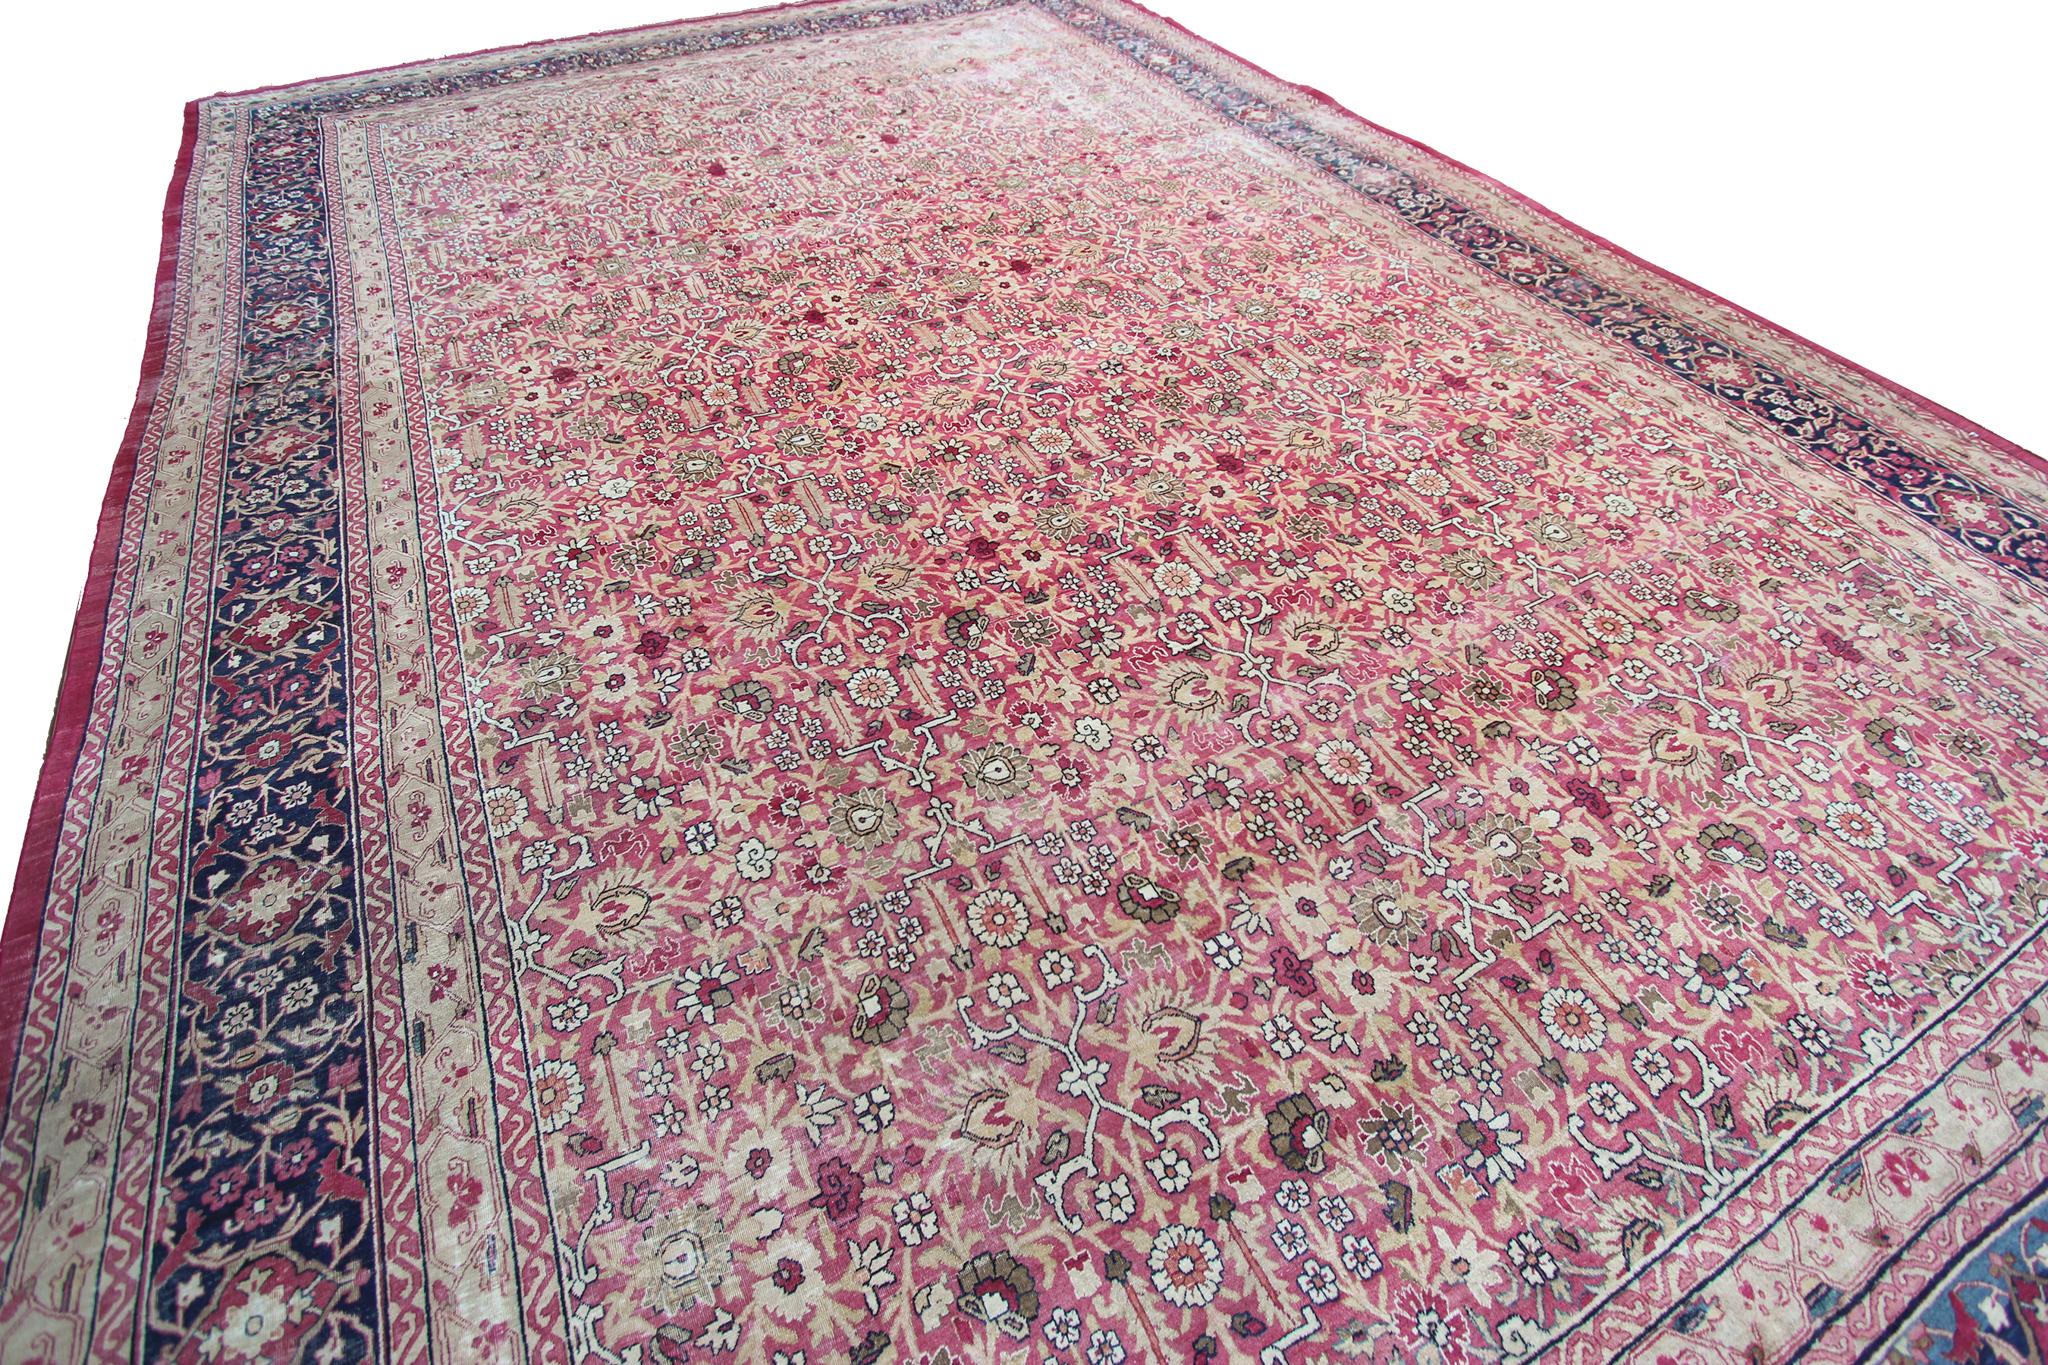 Persian c1870 Pink Antique Lavar Kermanshah Fine Geometric Rug 11x17ft 138cm x 519cm For Sale